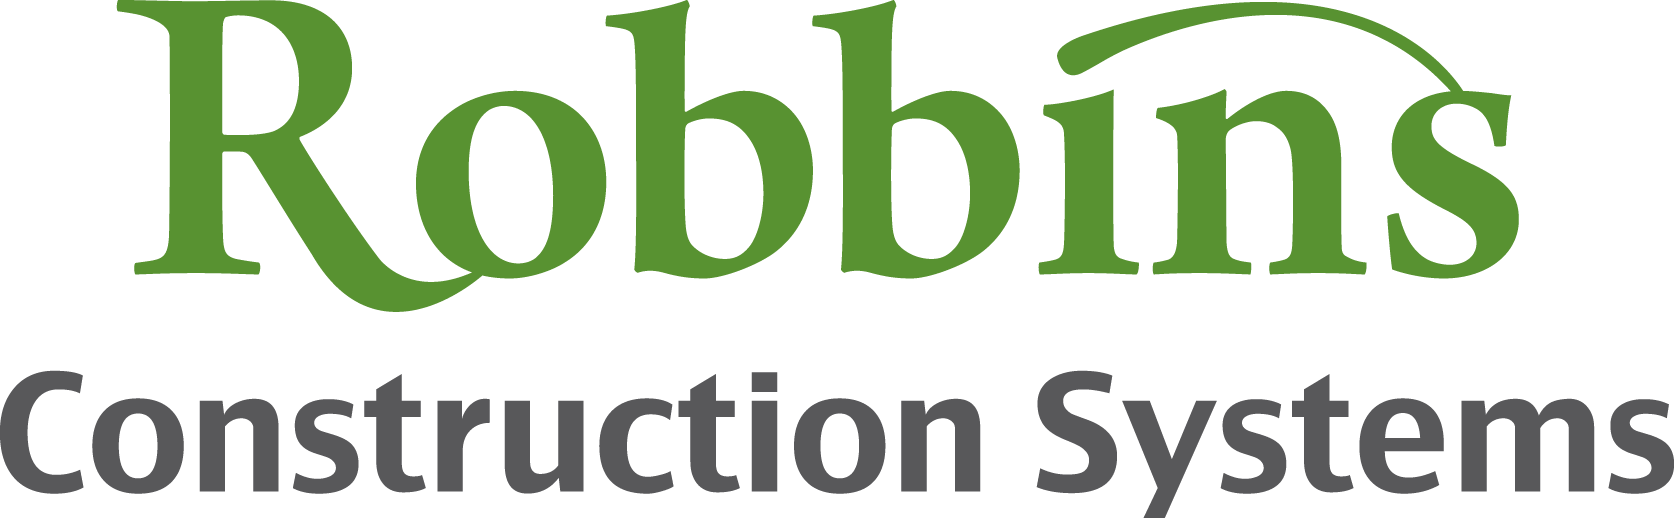 Robbins Construction Systems, LLC Logo